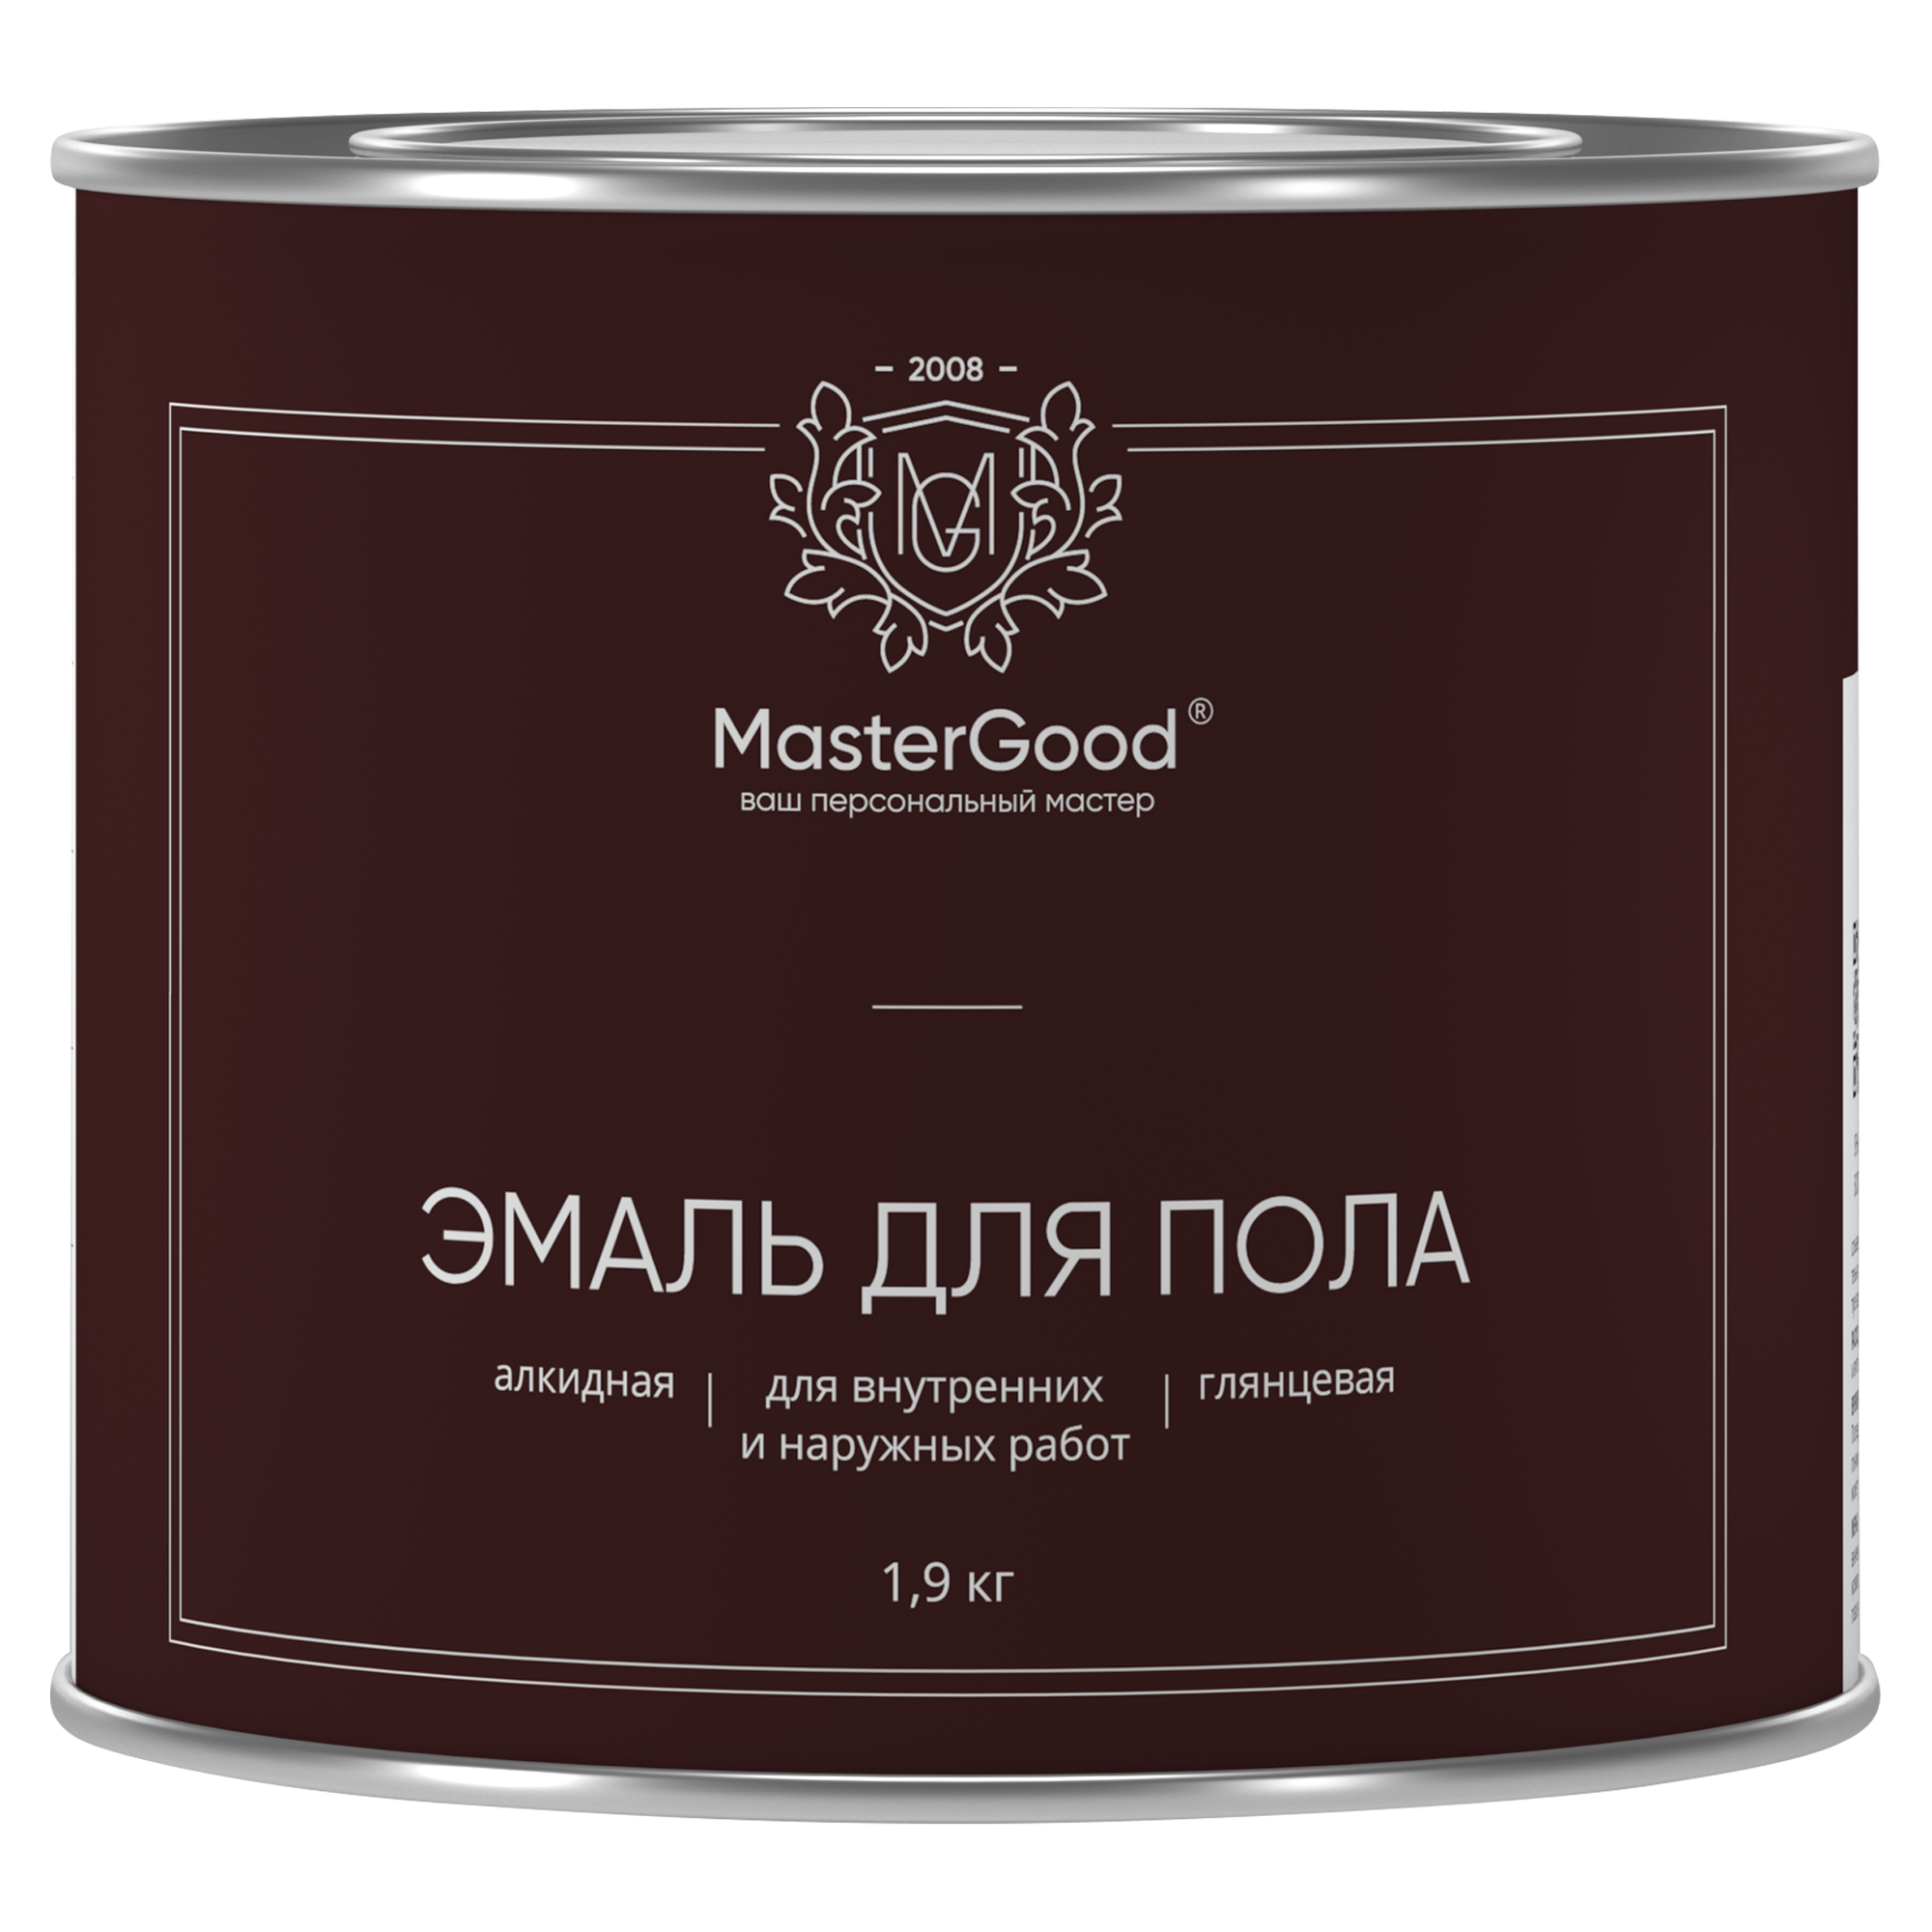 Эмаль для пола Master Good красно-коричневая 1,9 кг жен комплект good night серый р 48